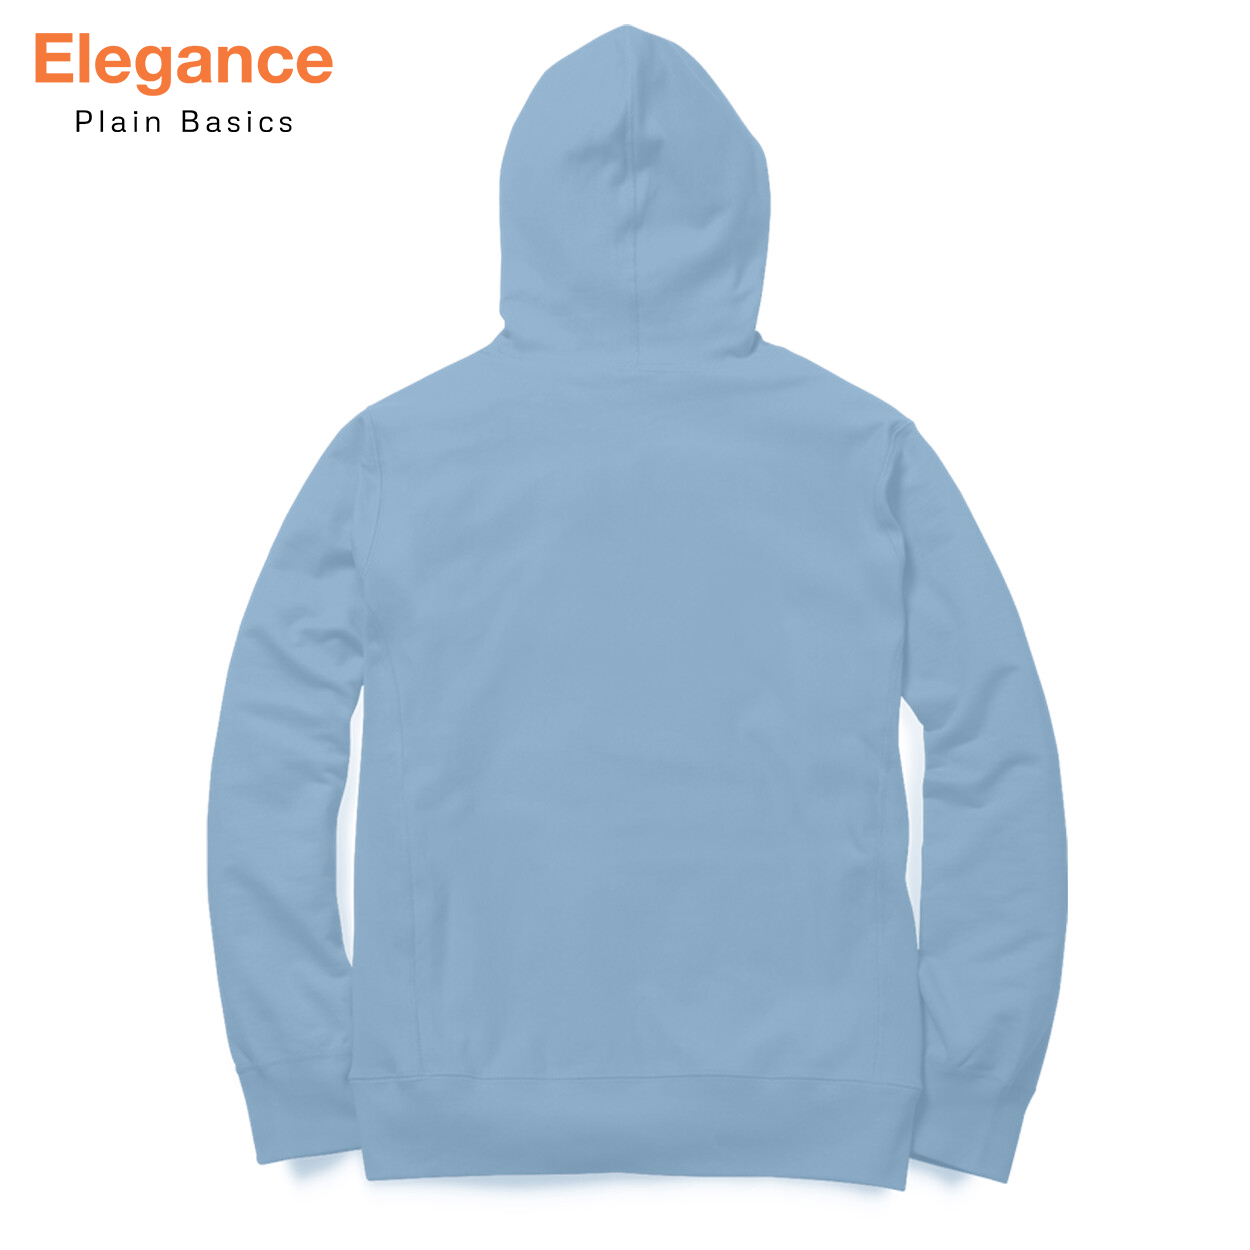 Baby Blue Hoodie - Elegance Plain Basics - The Sanatan Store